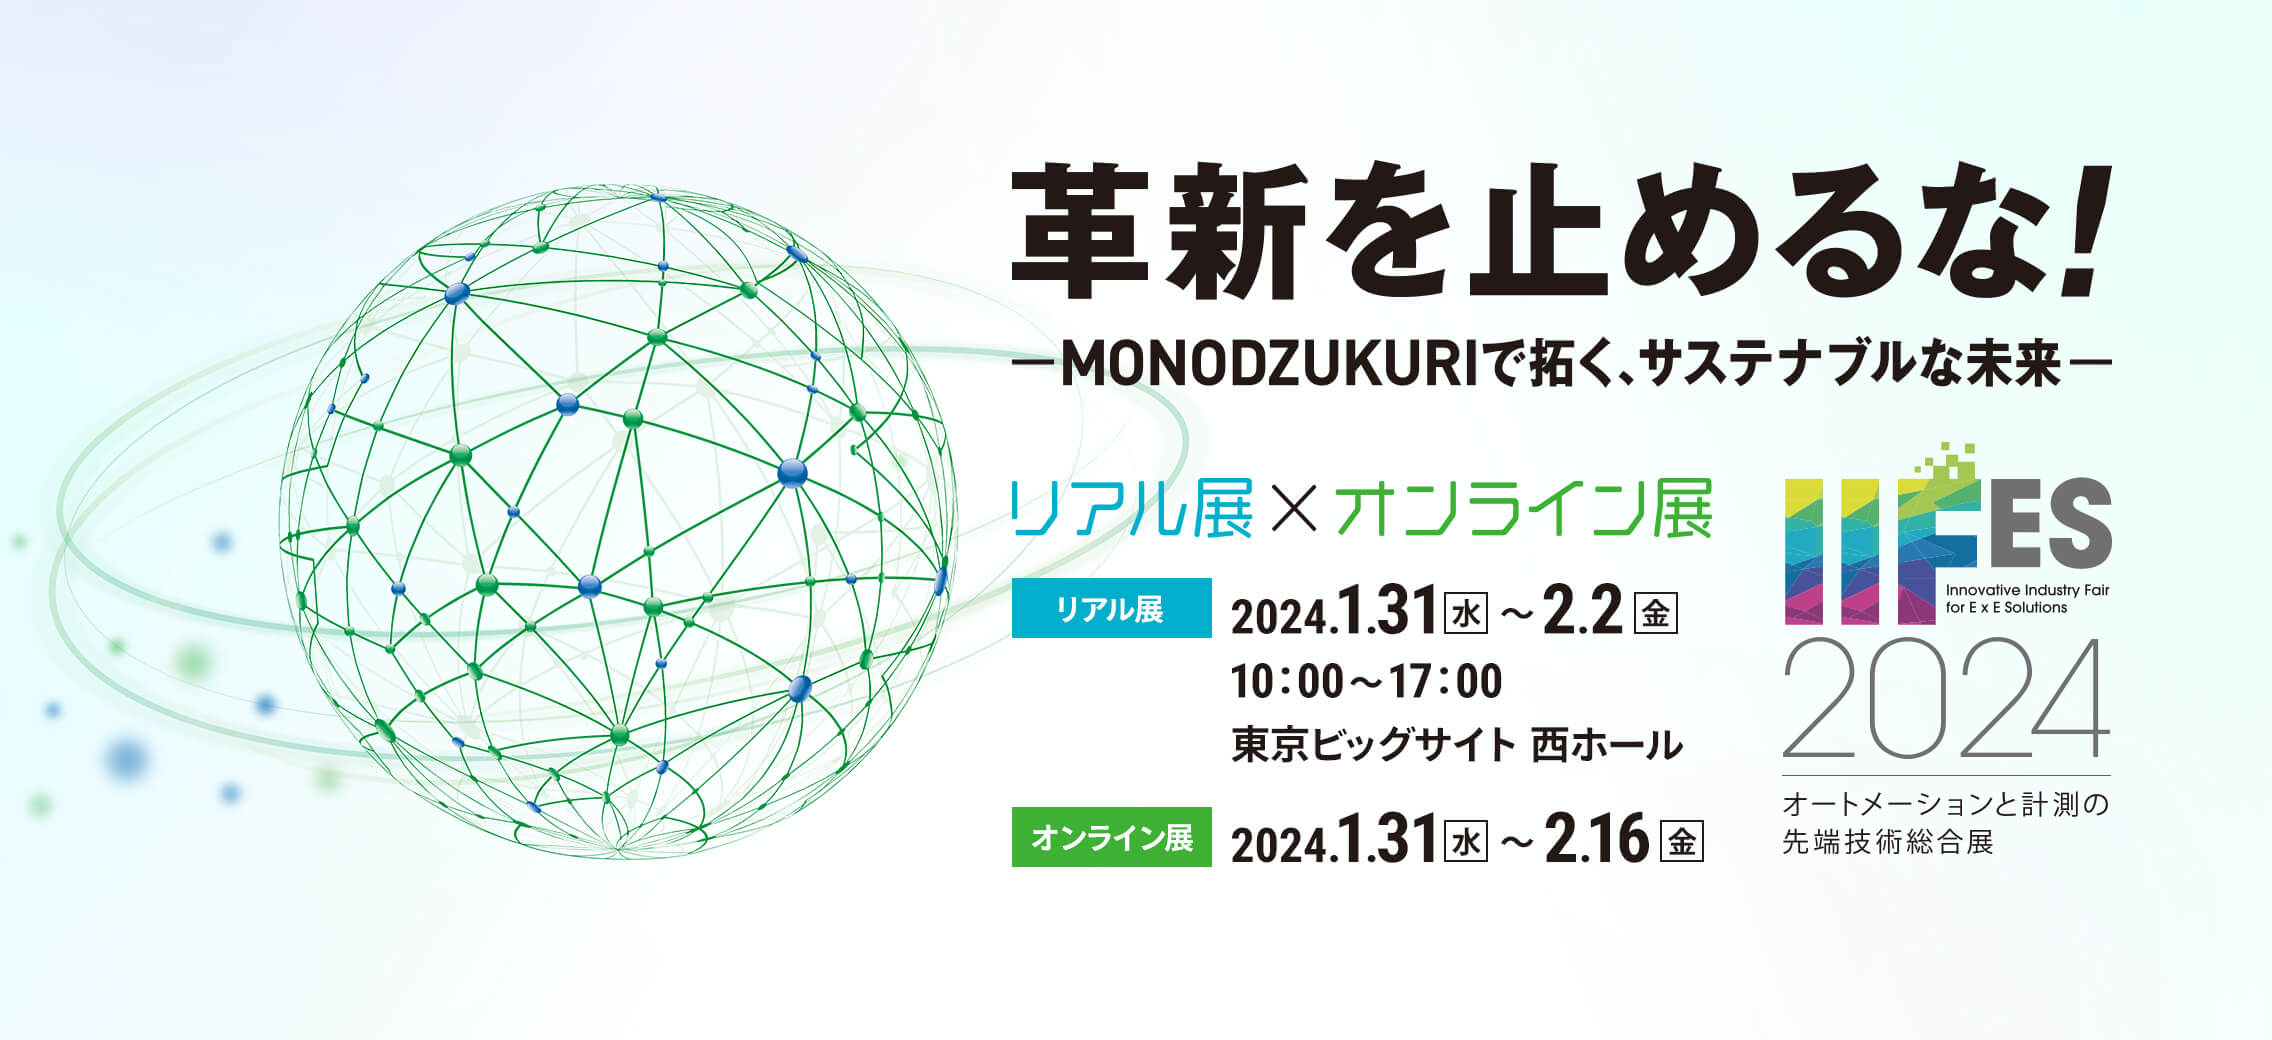 革新を止めるな！MONODUKURIで拓く、サステナブルな未来 リアル展×オンライン展 リアル展 2024.1.31（水）～2.2（金）10:00～17:00 東京ビッグサイト 西ホール オンライン展 2024.1.31（水）～2.16（金）